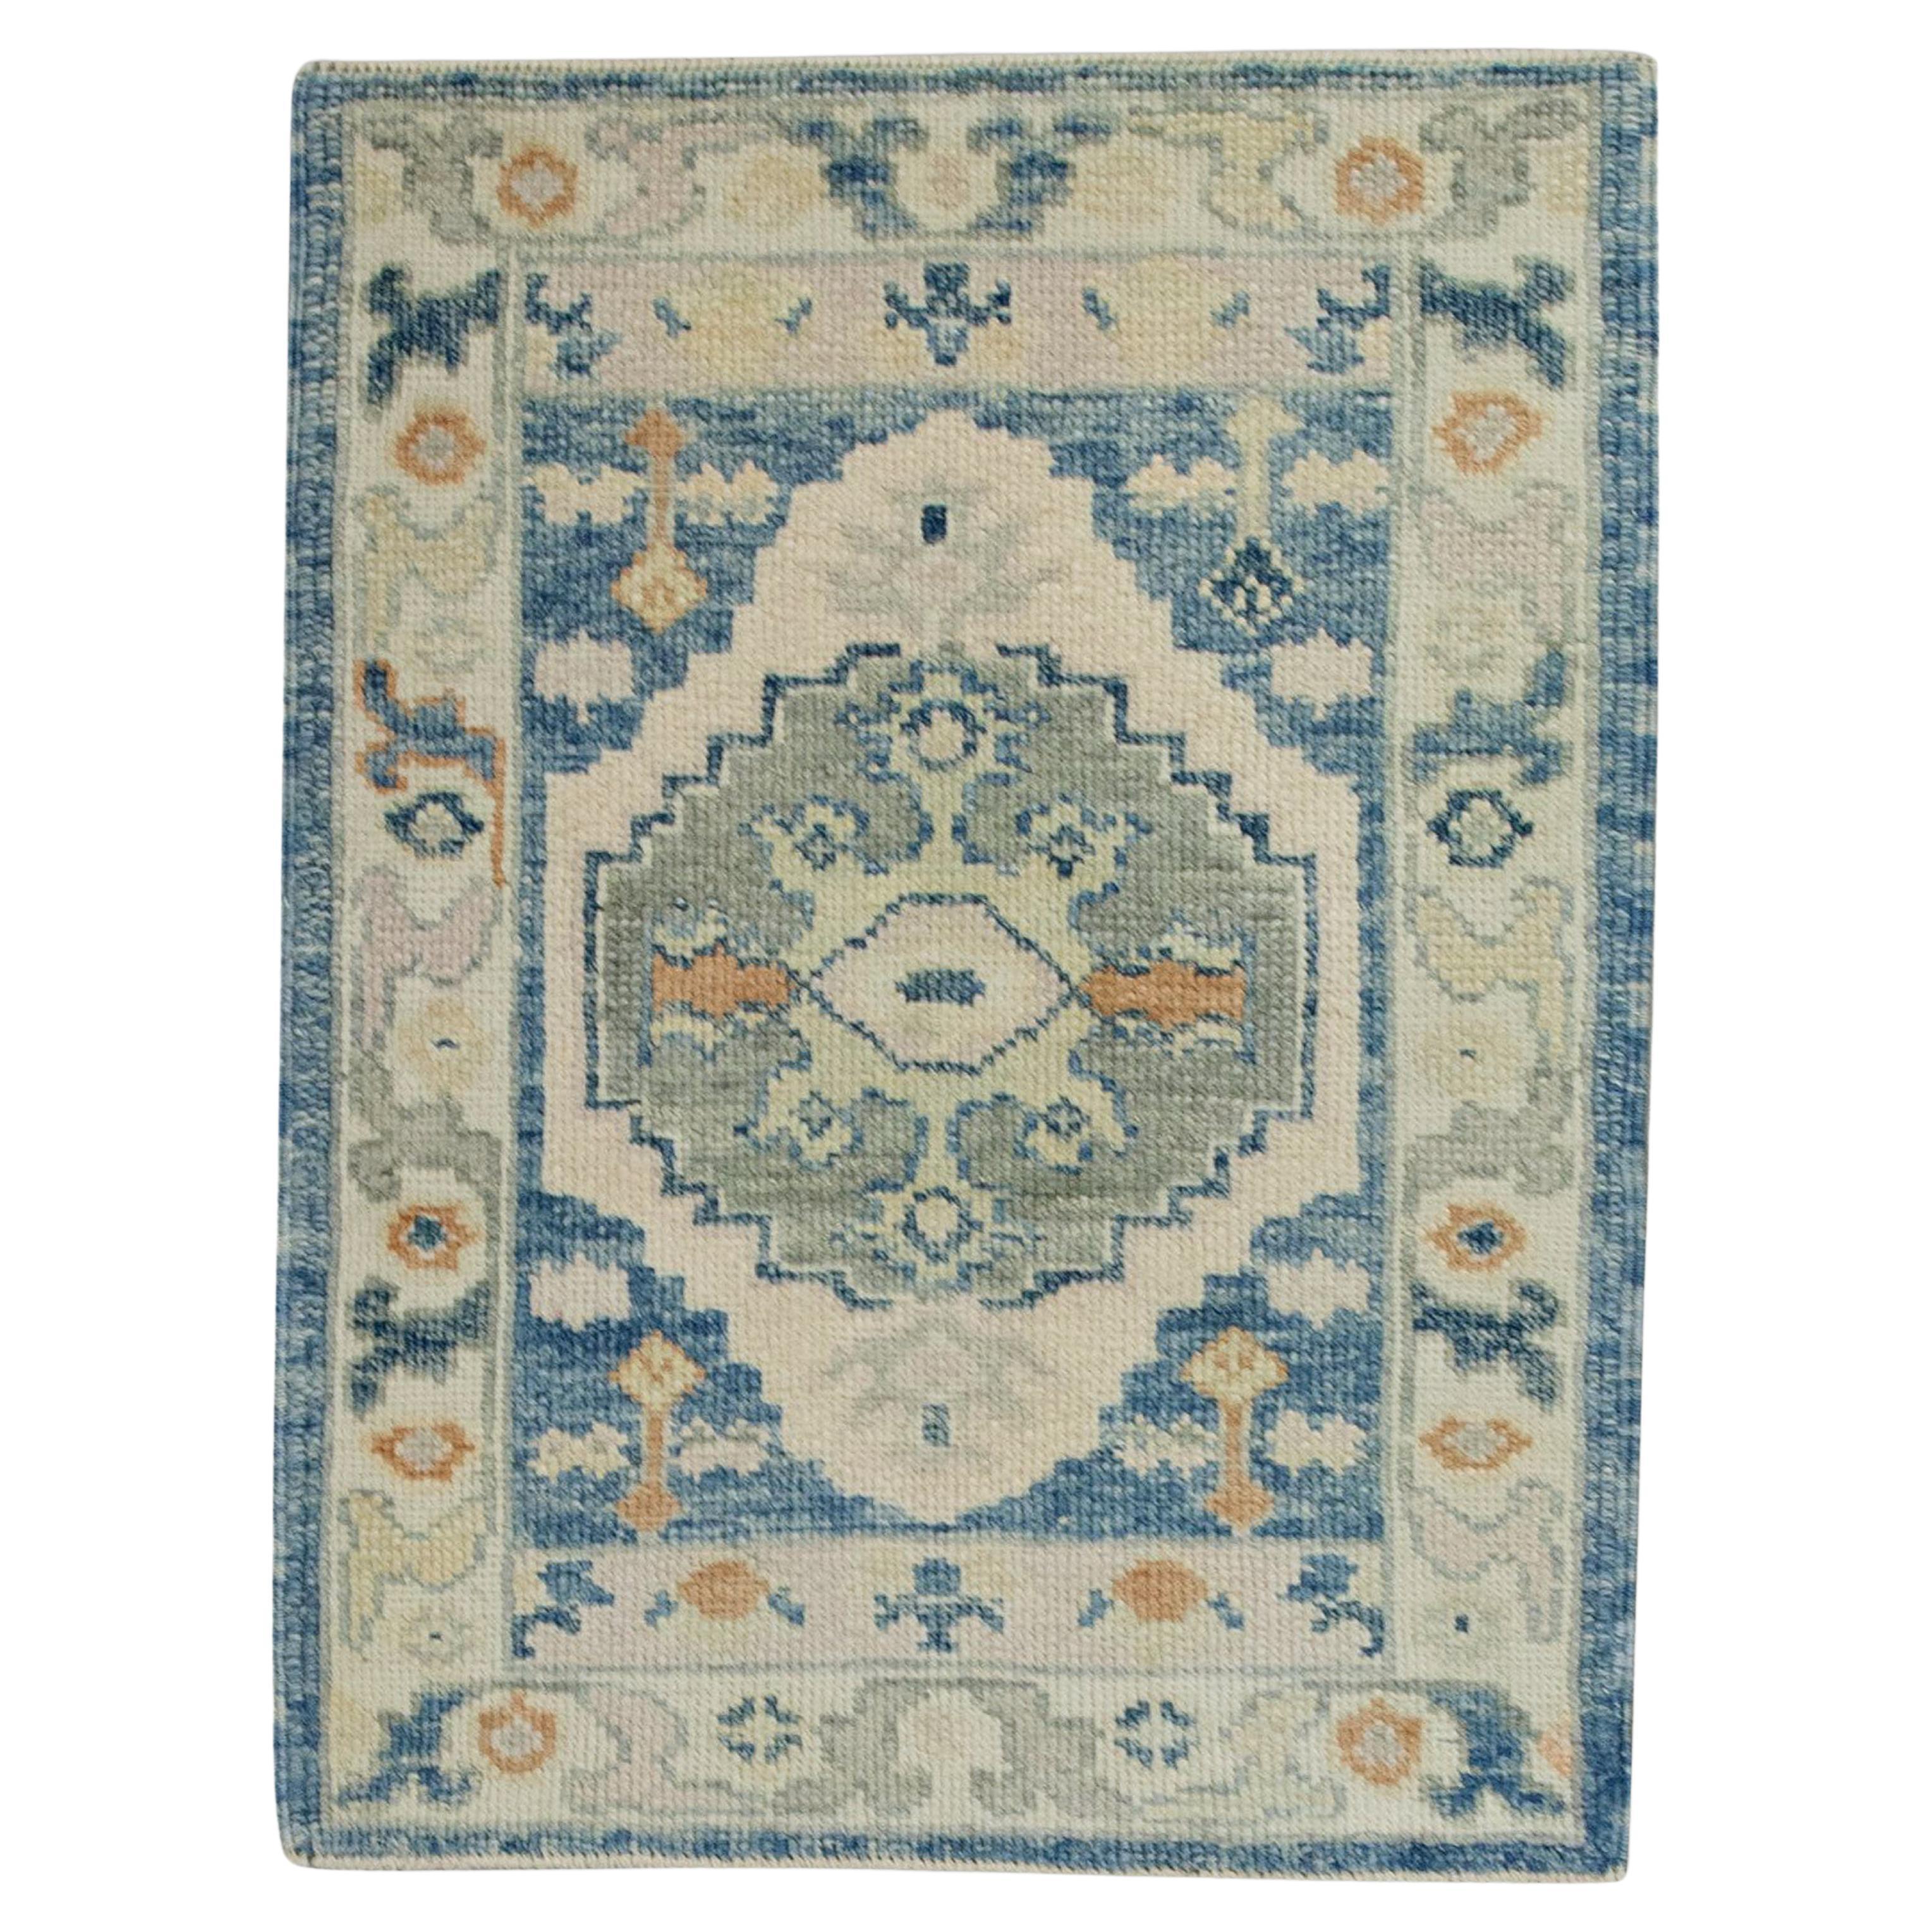 Handgewebter türkischer Oushak-Teppich in Blau mit mehrfarbigem Blumenmuster aus Wolle 2'4" x 3'